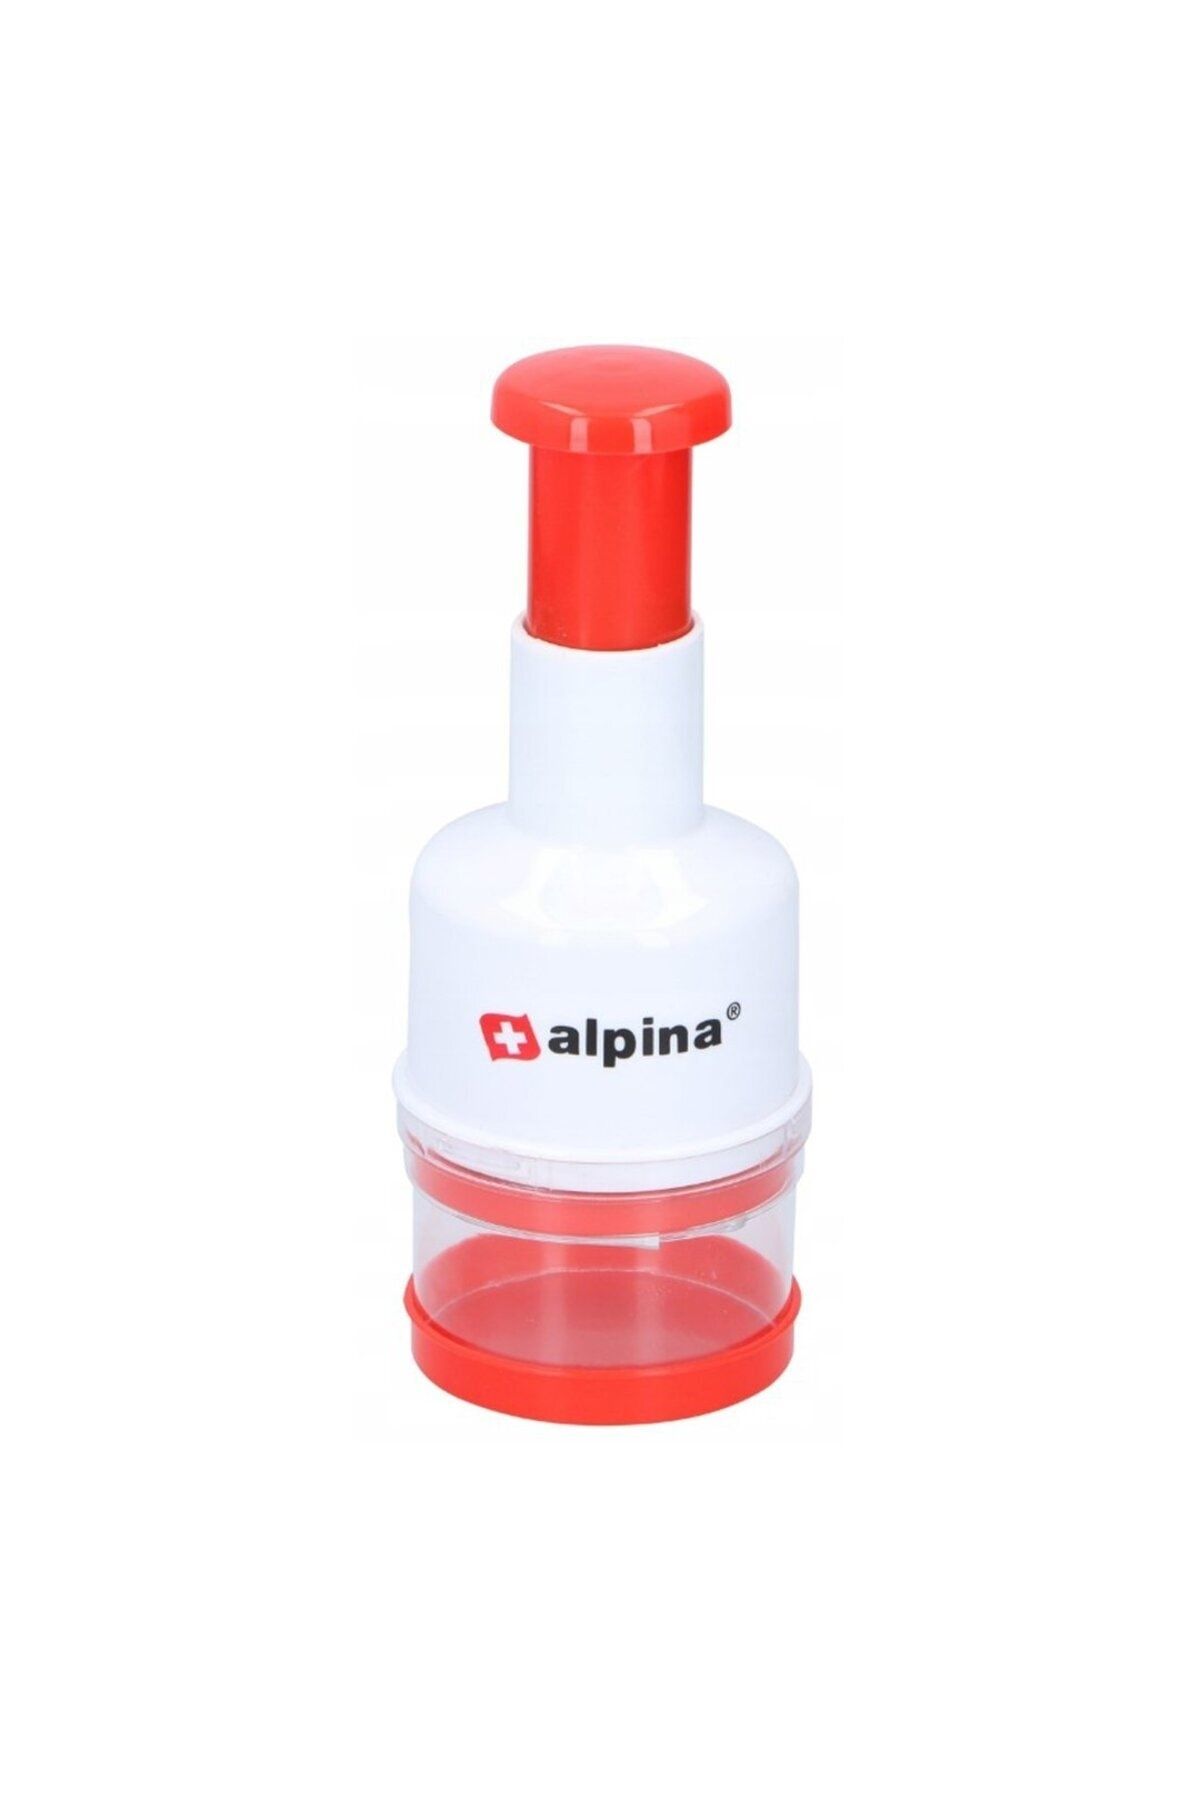 Alpina Basmalı Doğrayıcı - Beyaz / Kırmızı